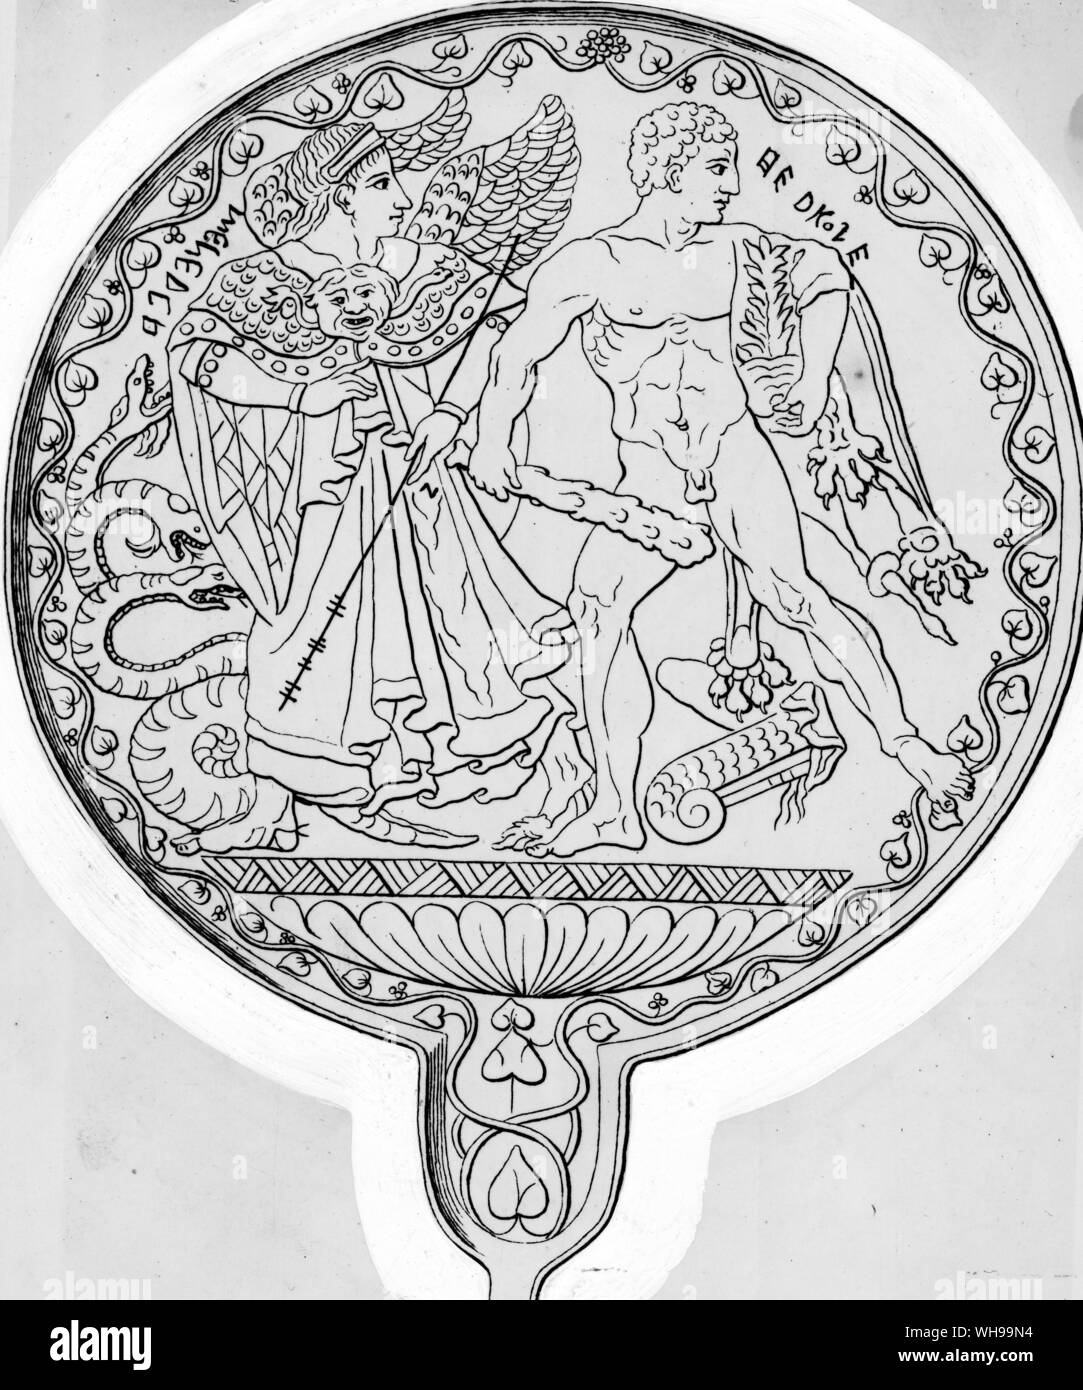 Une gravure sur un miroir étrusque représentant Hercule Menrva menant à son deuxième travail la destruction de l'hydre de nombreux Banque D'Images